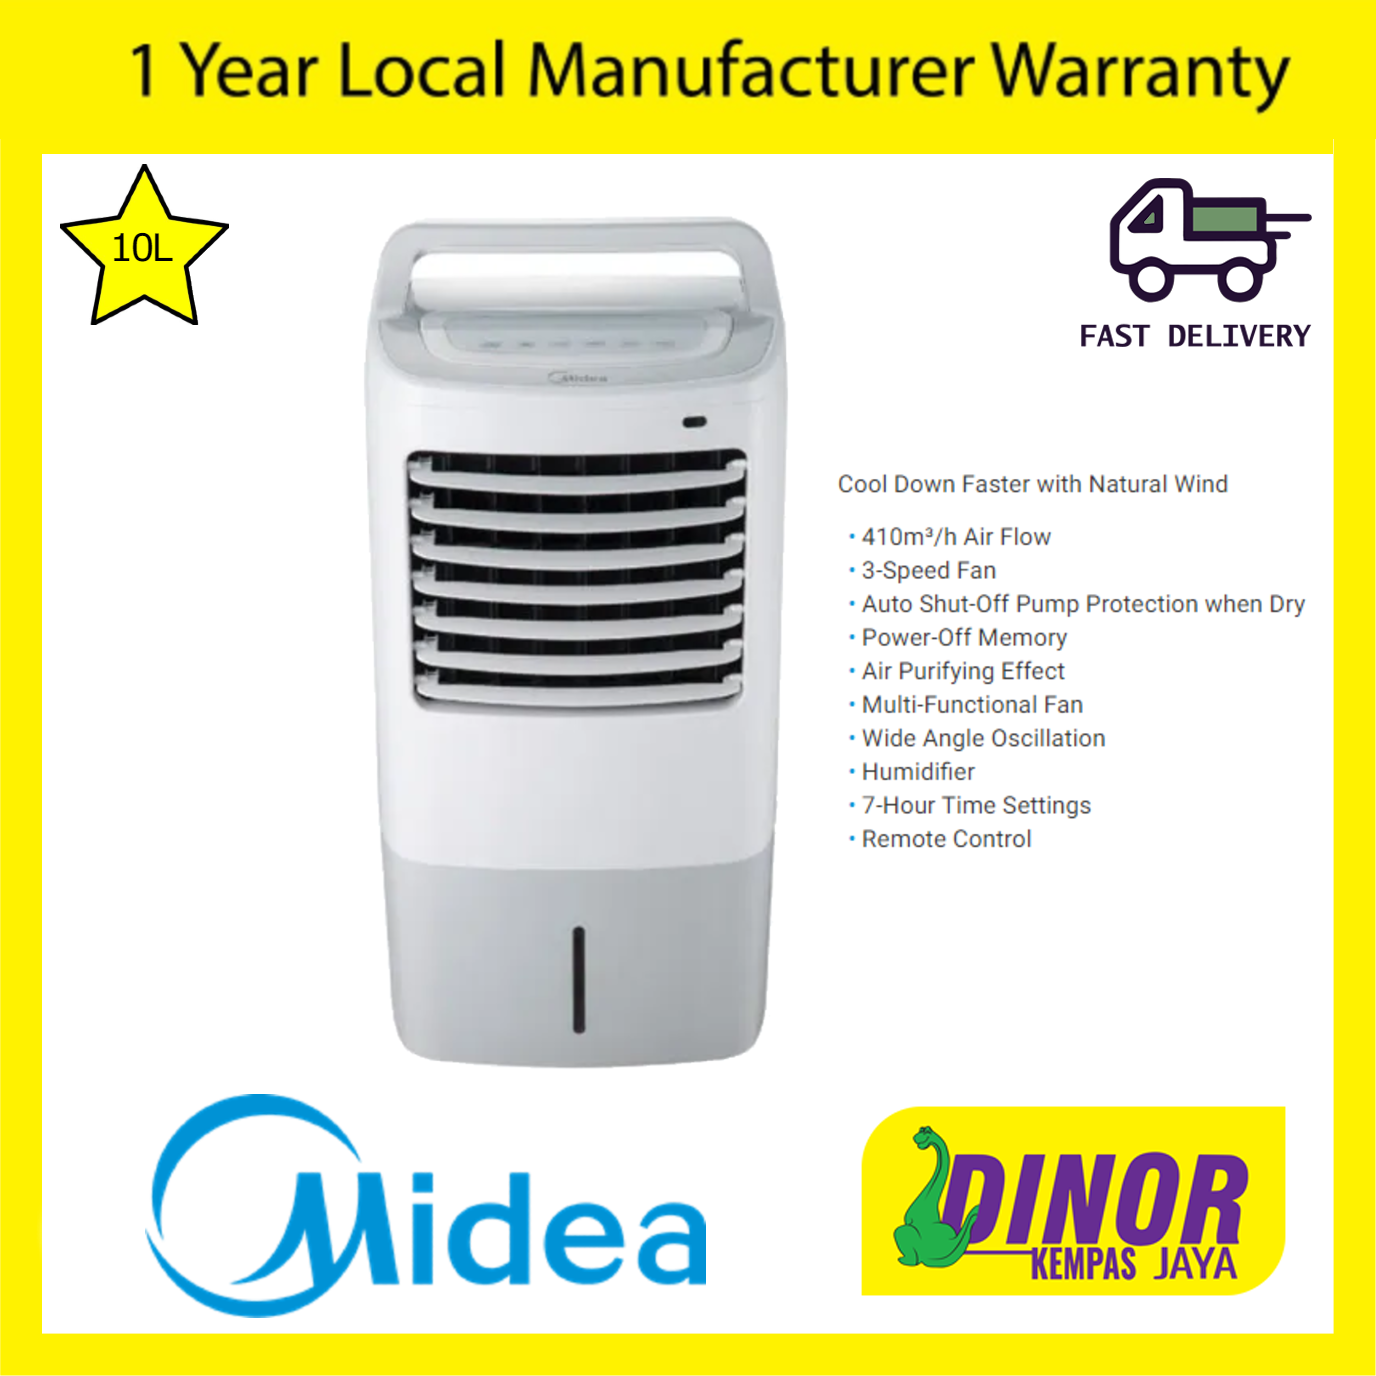 Midea 10L Air Cooler MAC-120AR / MAC120AR 410m³/h Air Flow